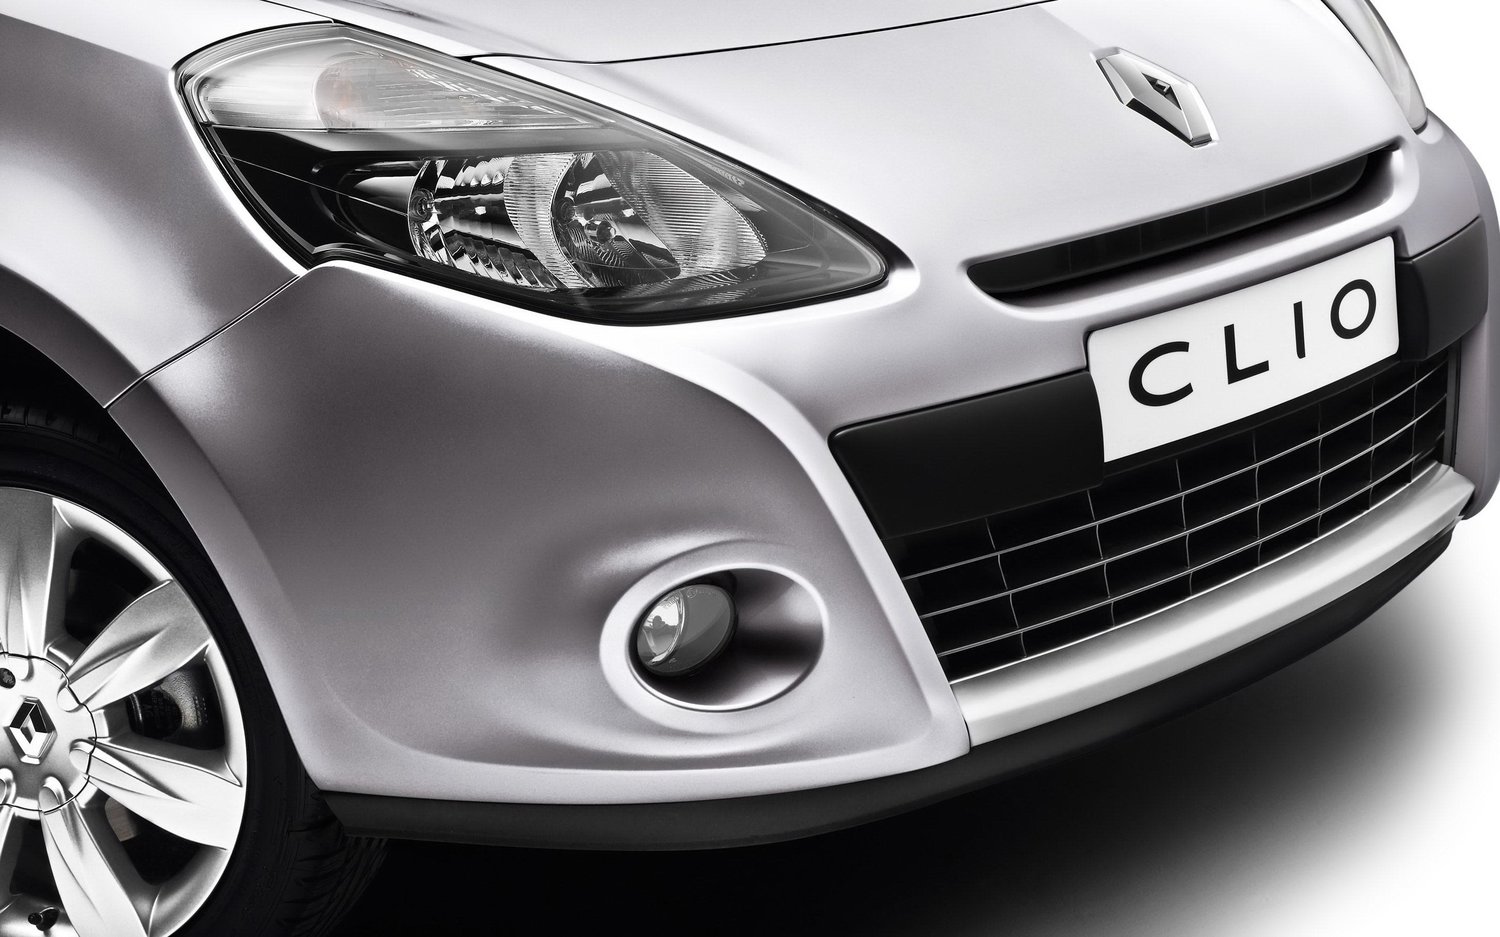 хэтчбек 5 дв. Renault Clio 2009 - 2012г выпуска модификация 1.1 AMT (75 л.с.)